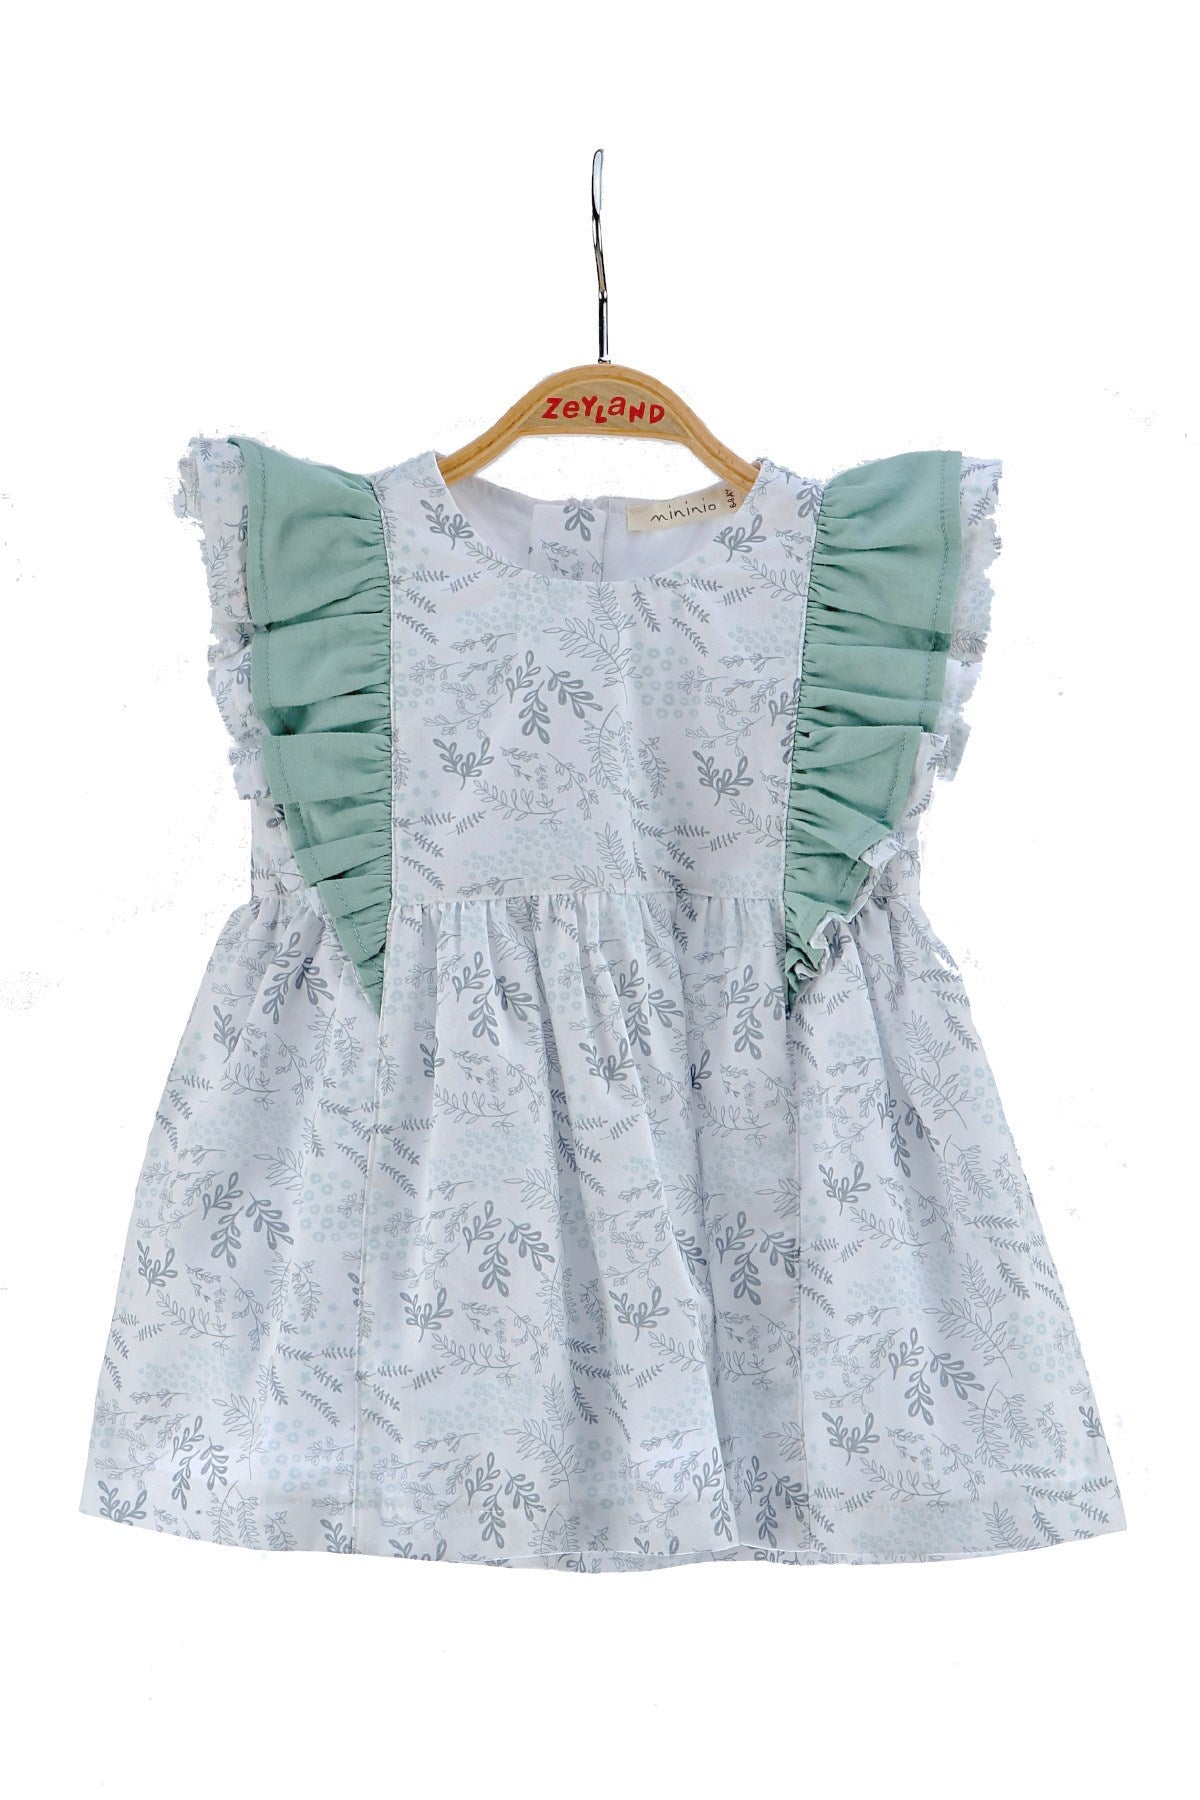 Kız Bebek Çiçek Desenli Fırfırlı Elbise (6ay-4yaş)-0